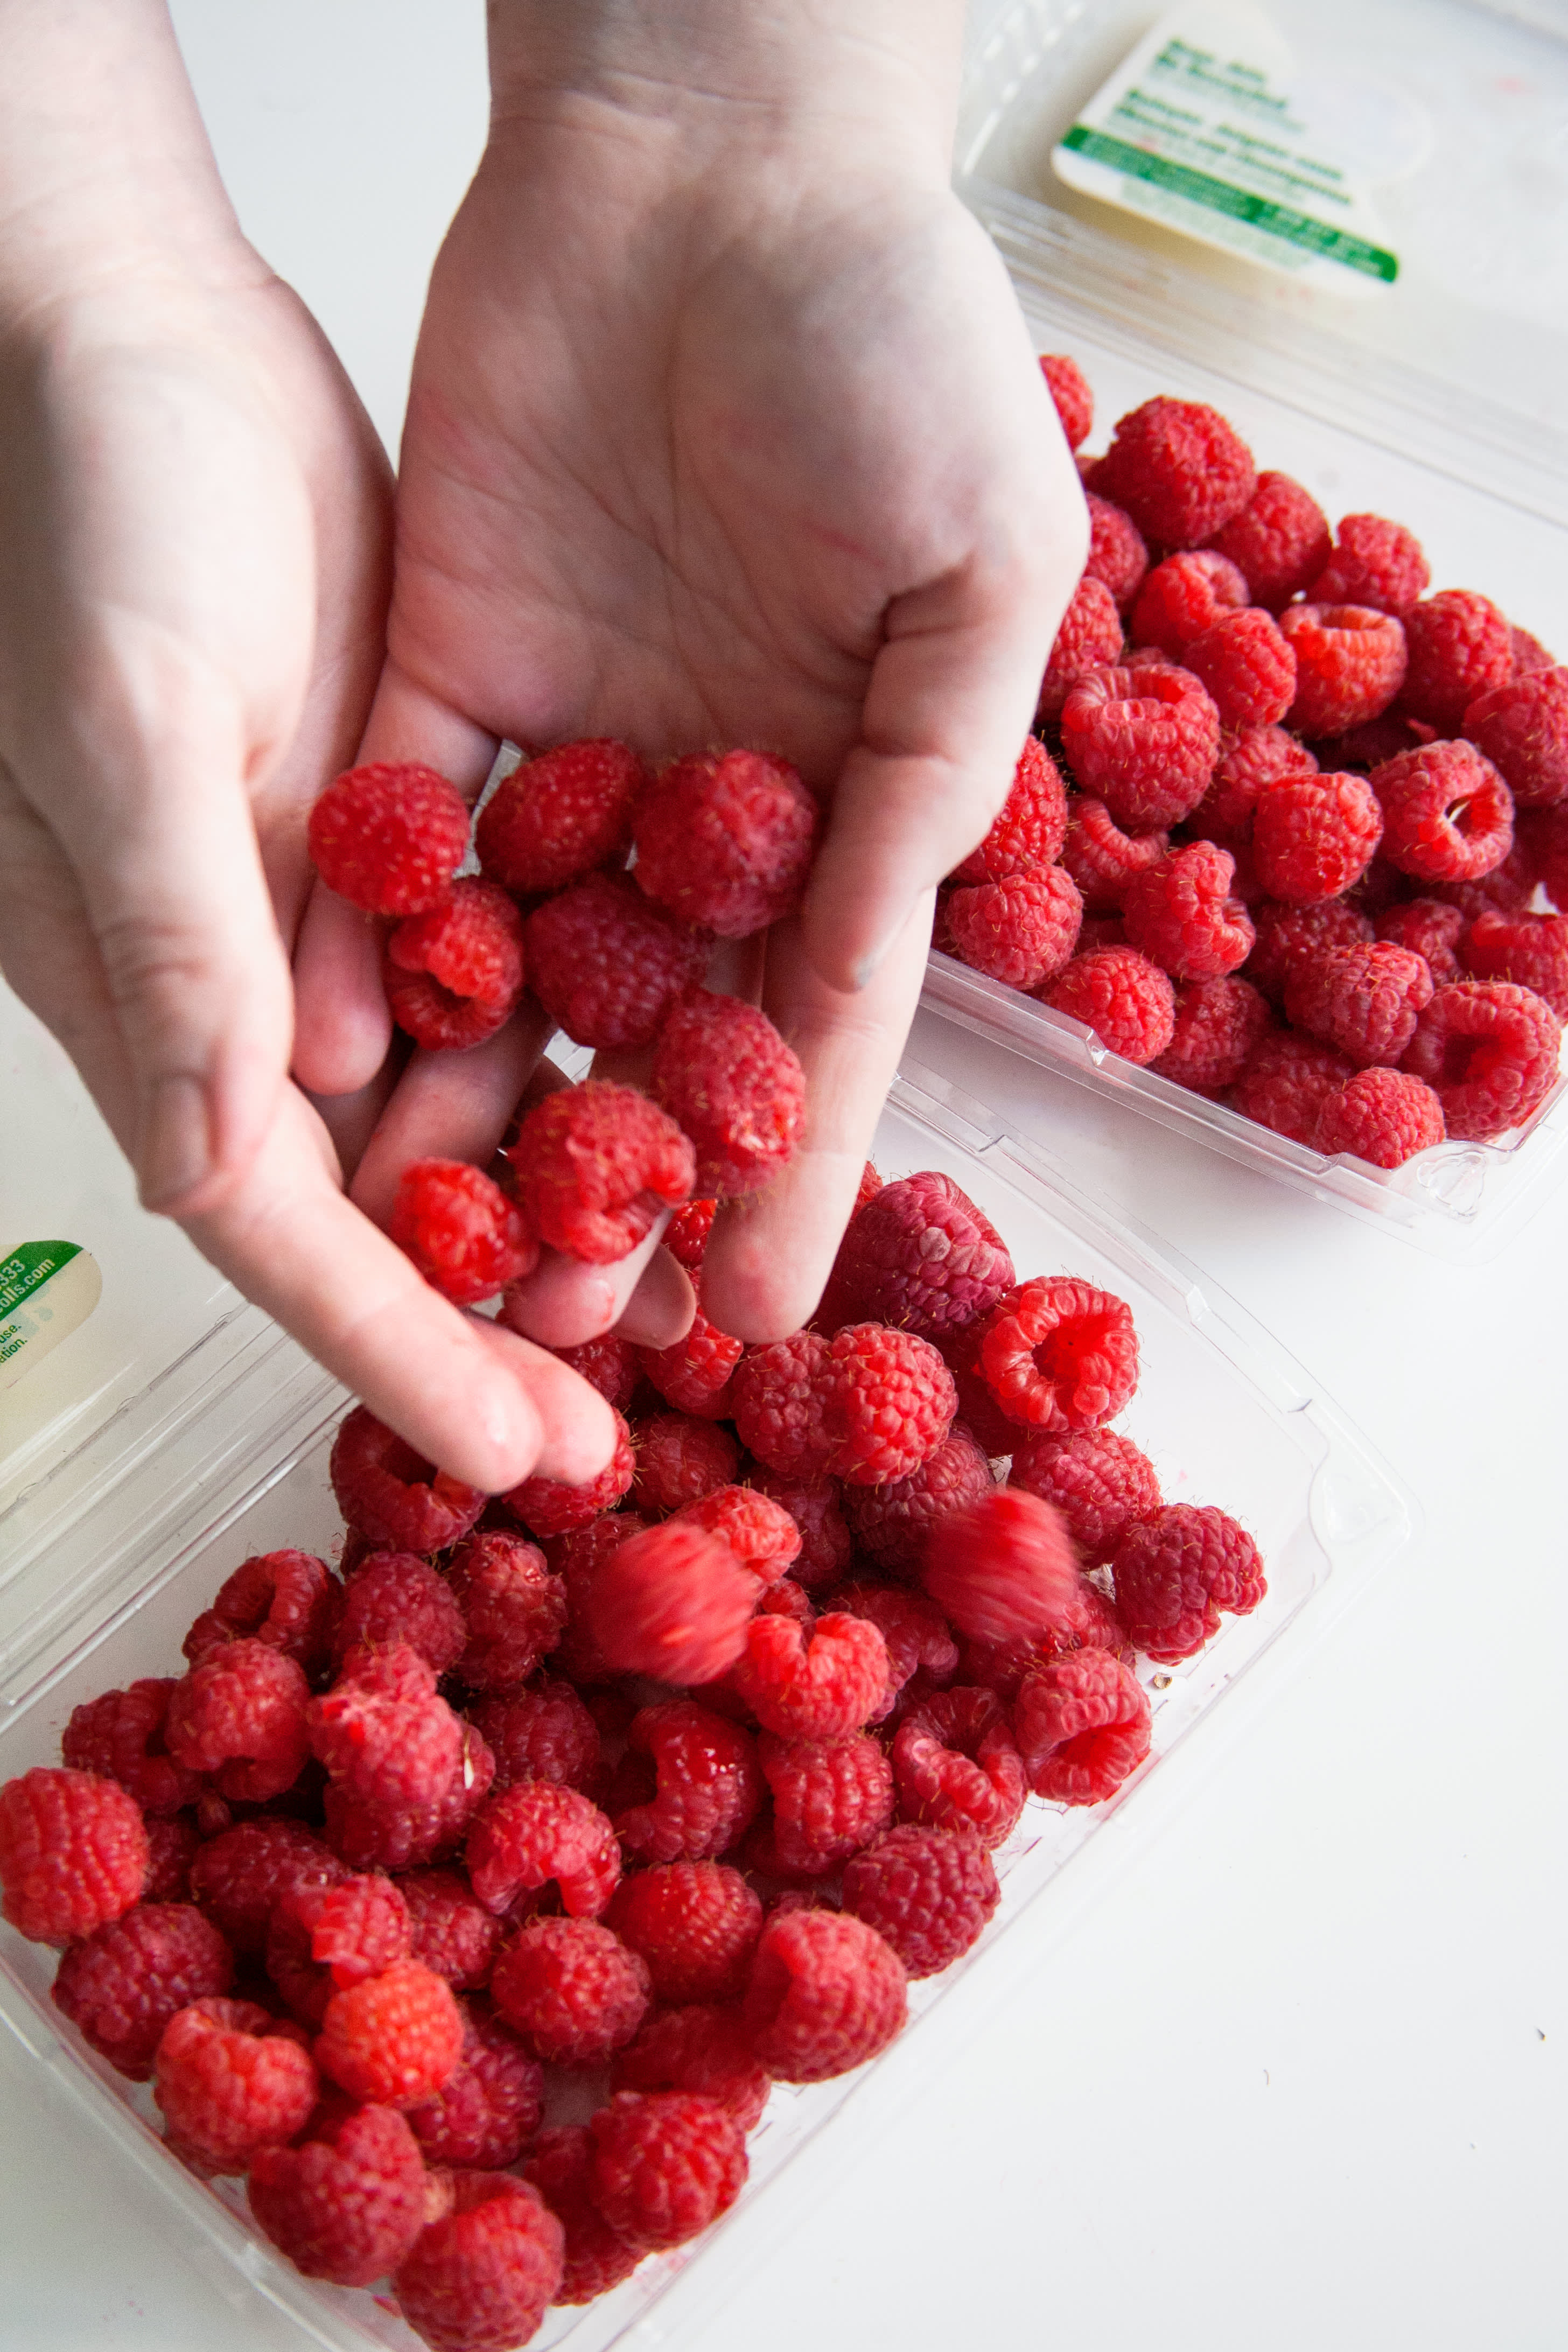 Reusable Berry Containers – Set of 2 – Farm Fresh Carolinas